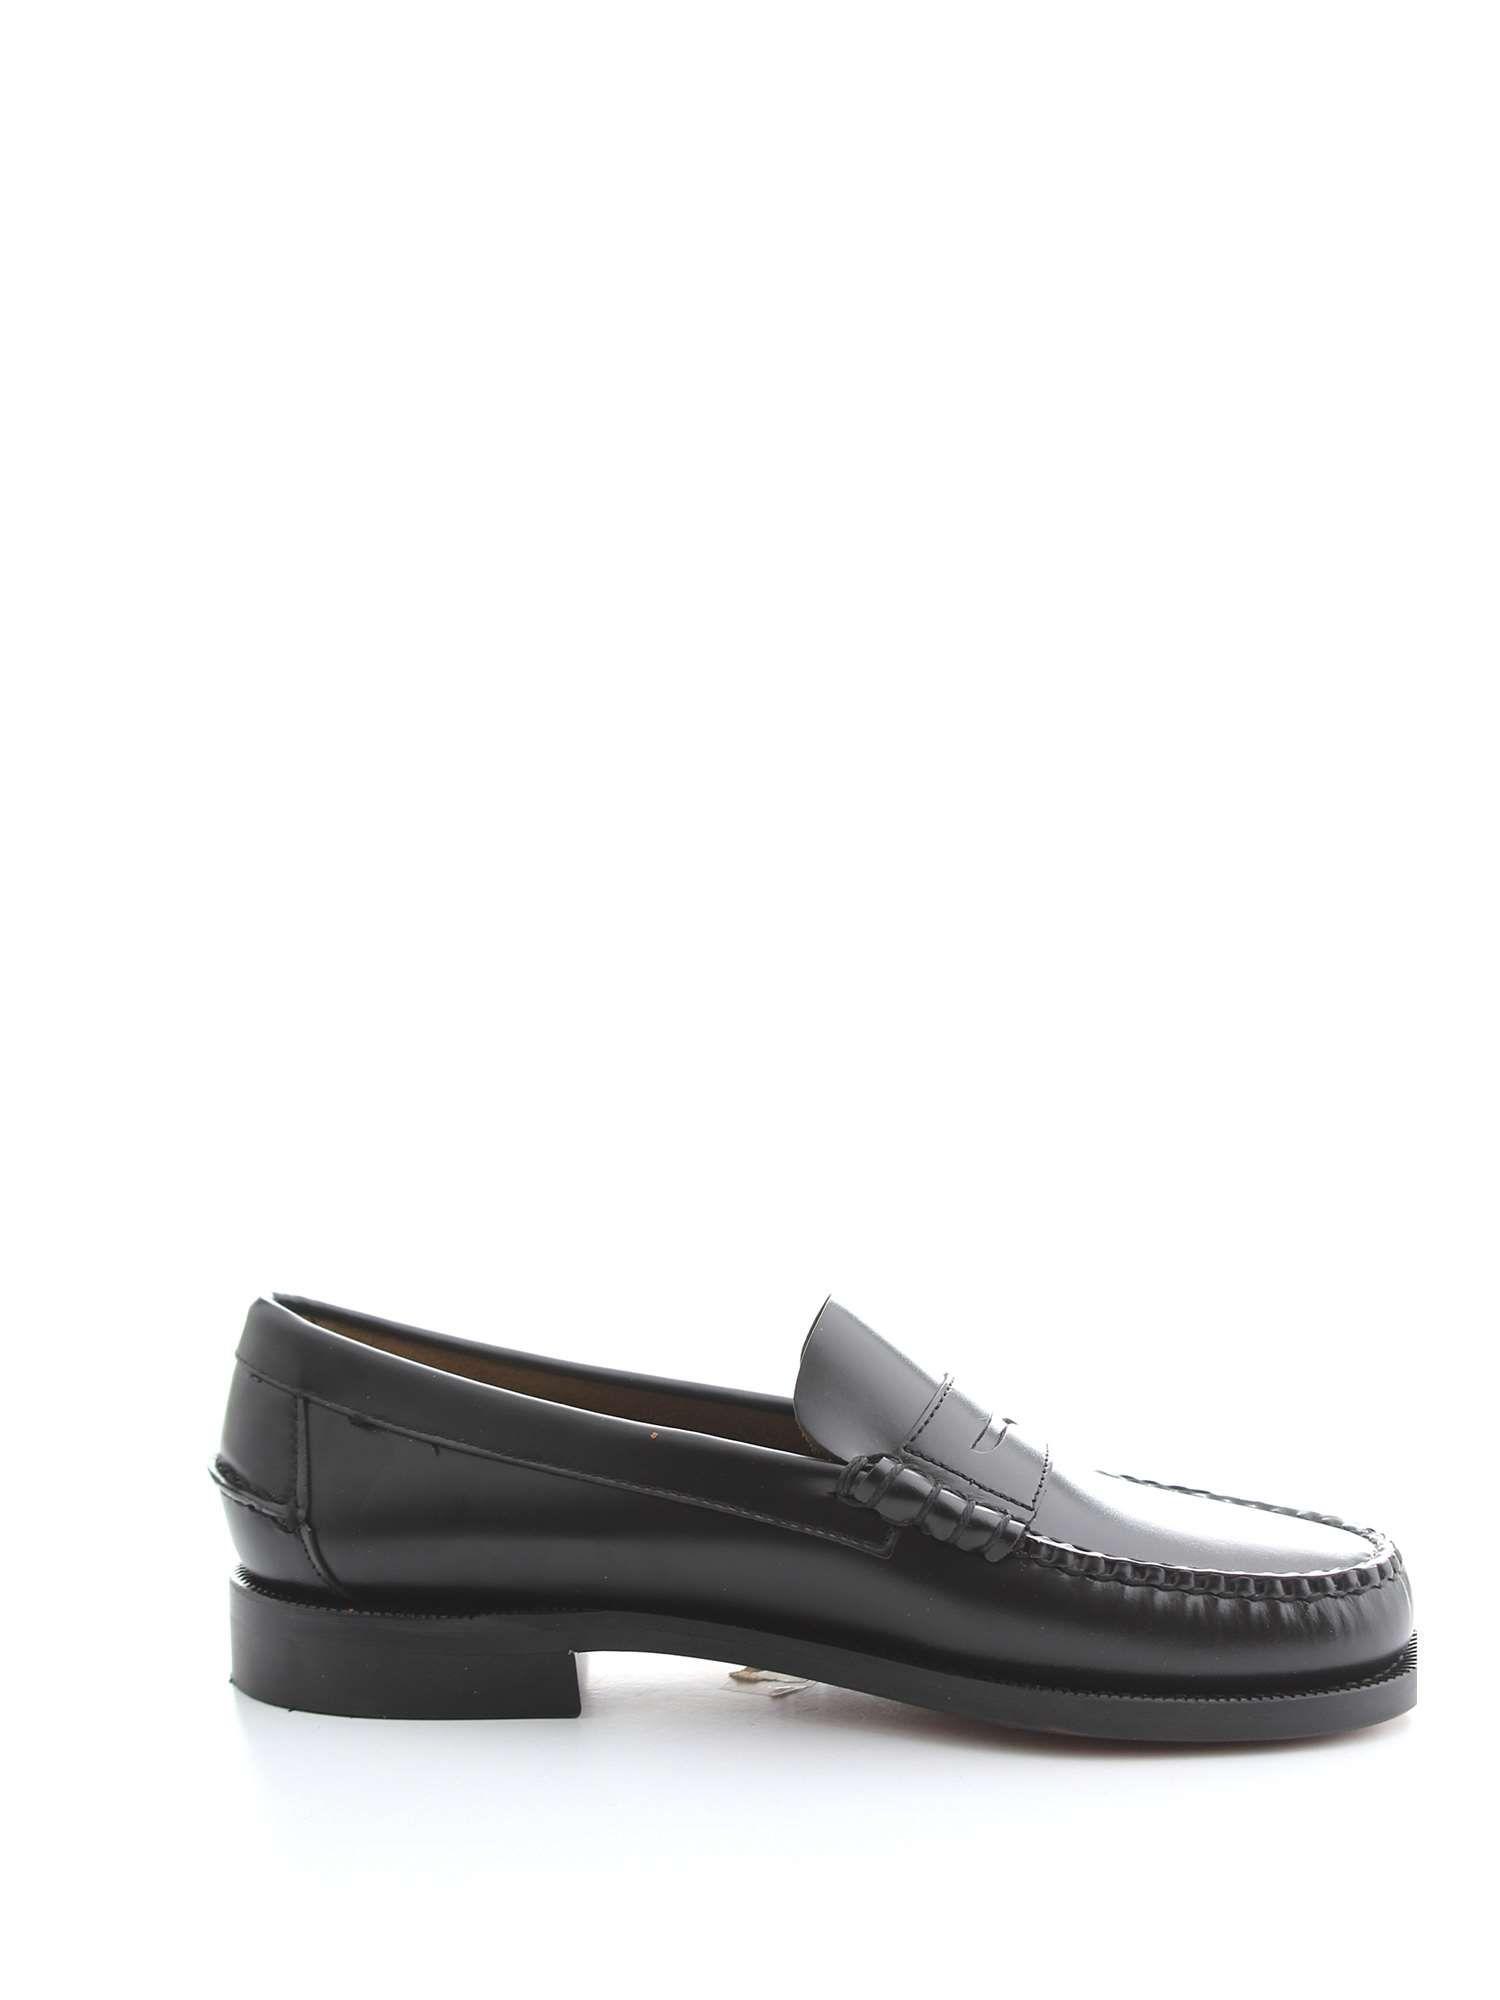 Sebago Black Leather Loafers in Black for Men - Lyst